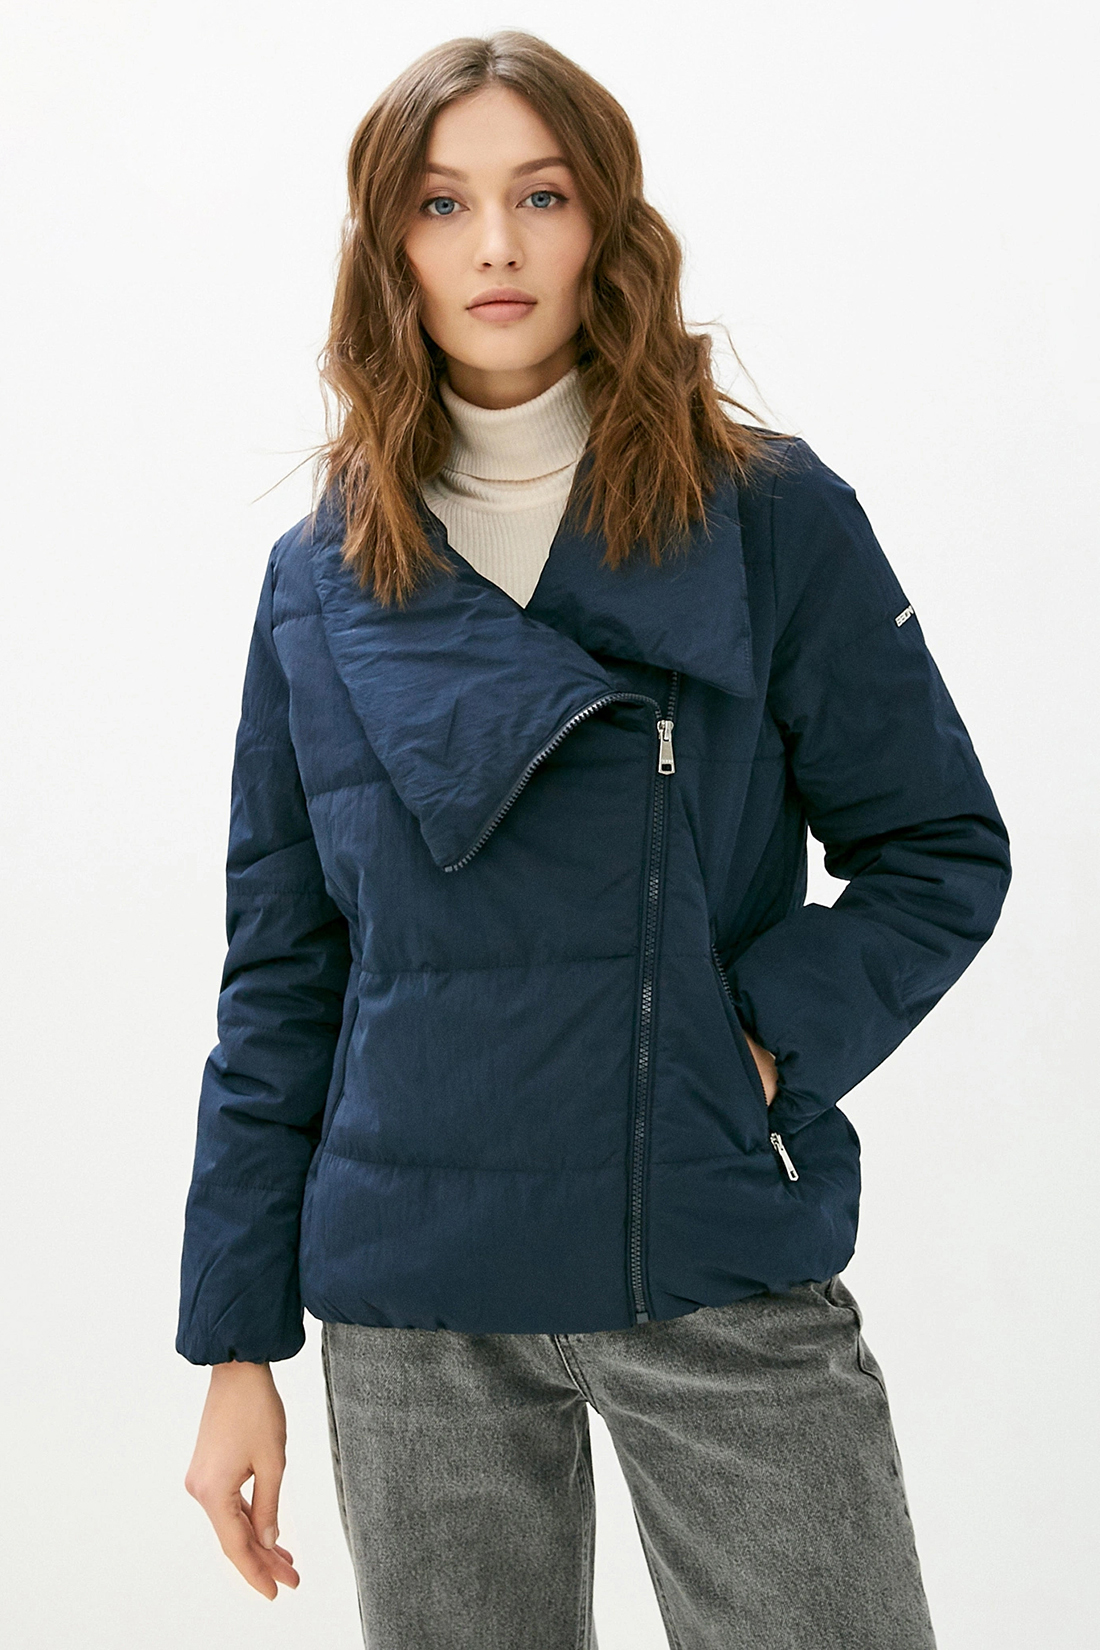 Куртка (арт. baon B030514), размер XL, цвет синий Куртка (арт. baon B030514) - фото 1